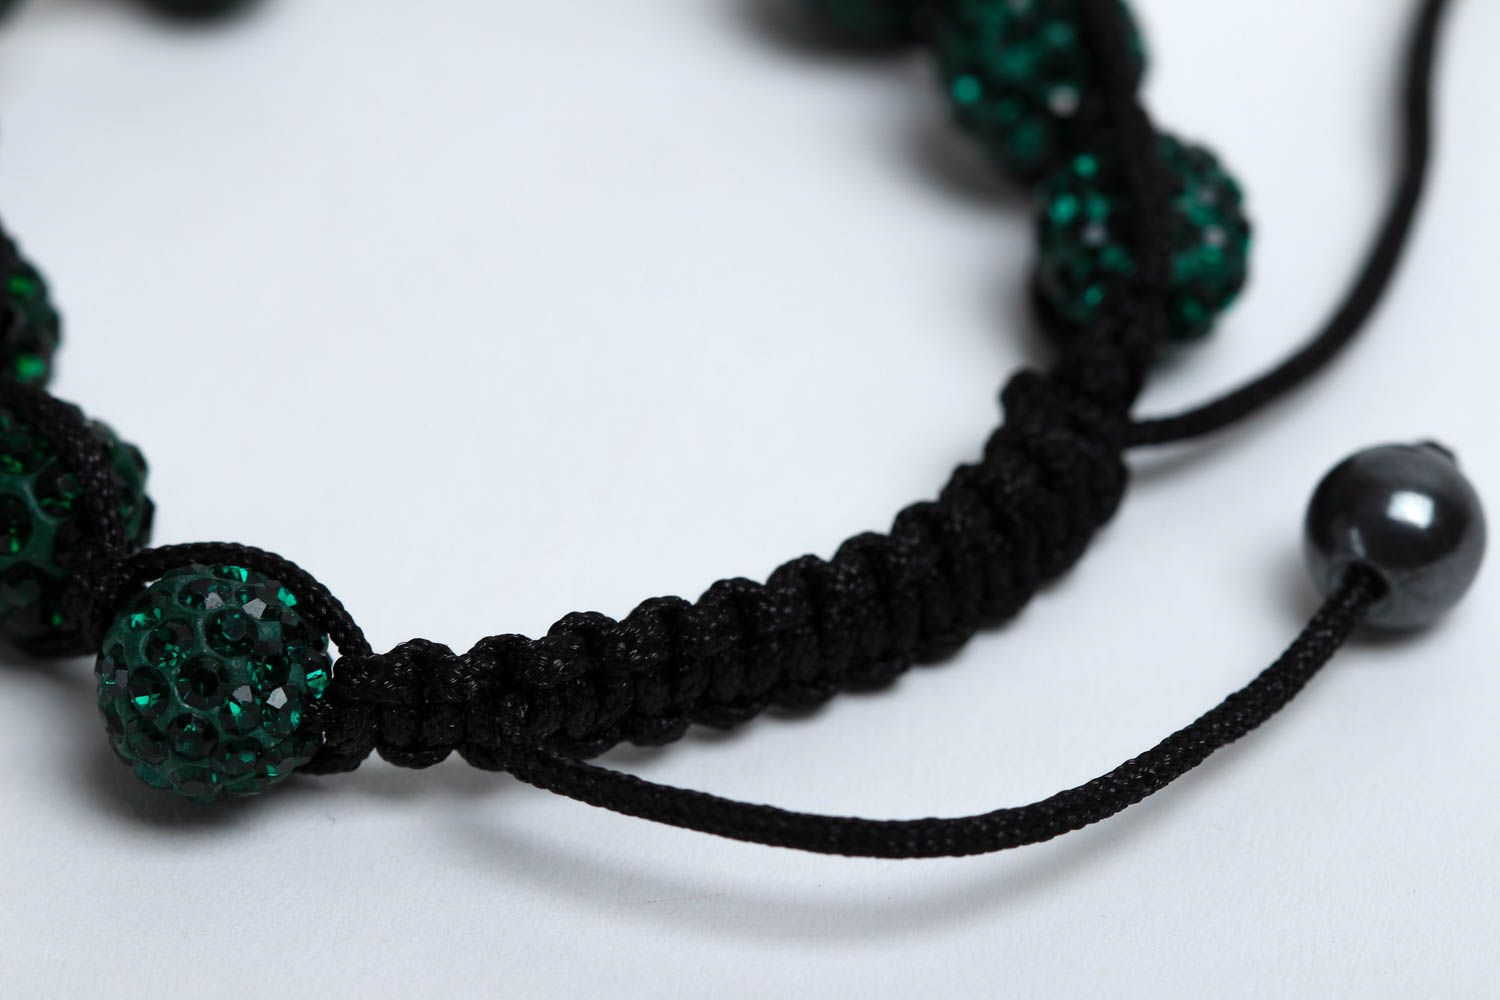  Женский браслет из бусин браслет ручной работы зеленый яркий браслет на руку фото 4